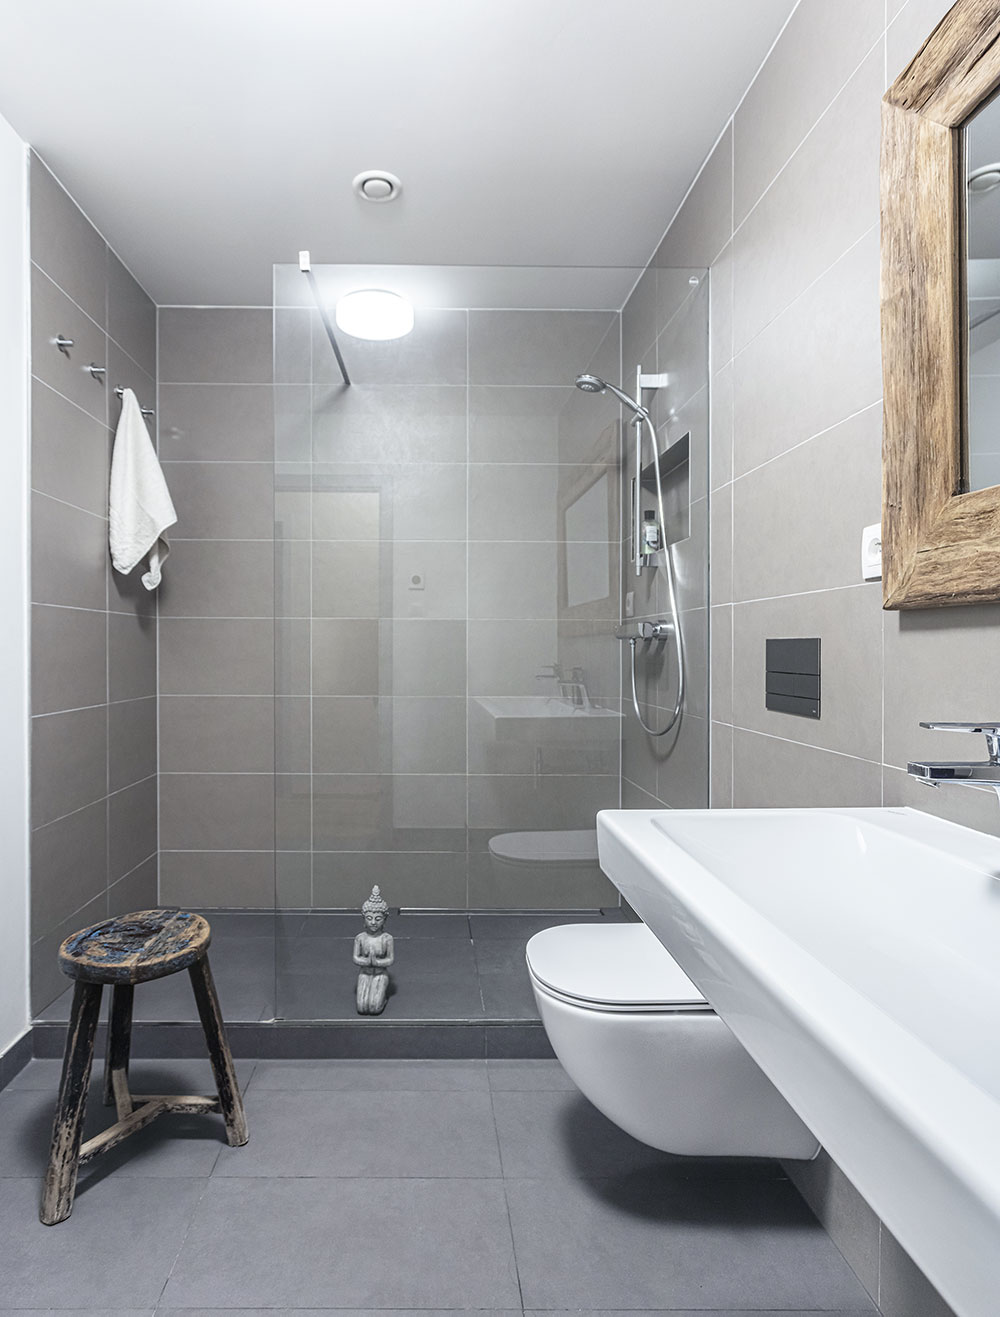 Koupelna je obložená šedým obkladem a se zbytkem bytu ji stylově spojují dřevěné zařizovací prvky, jako je rám zrcadla nad umyvadlem a praktická stolička. FOTO JIŘÍ HURT